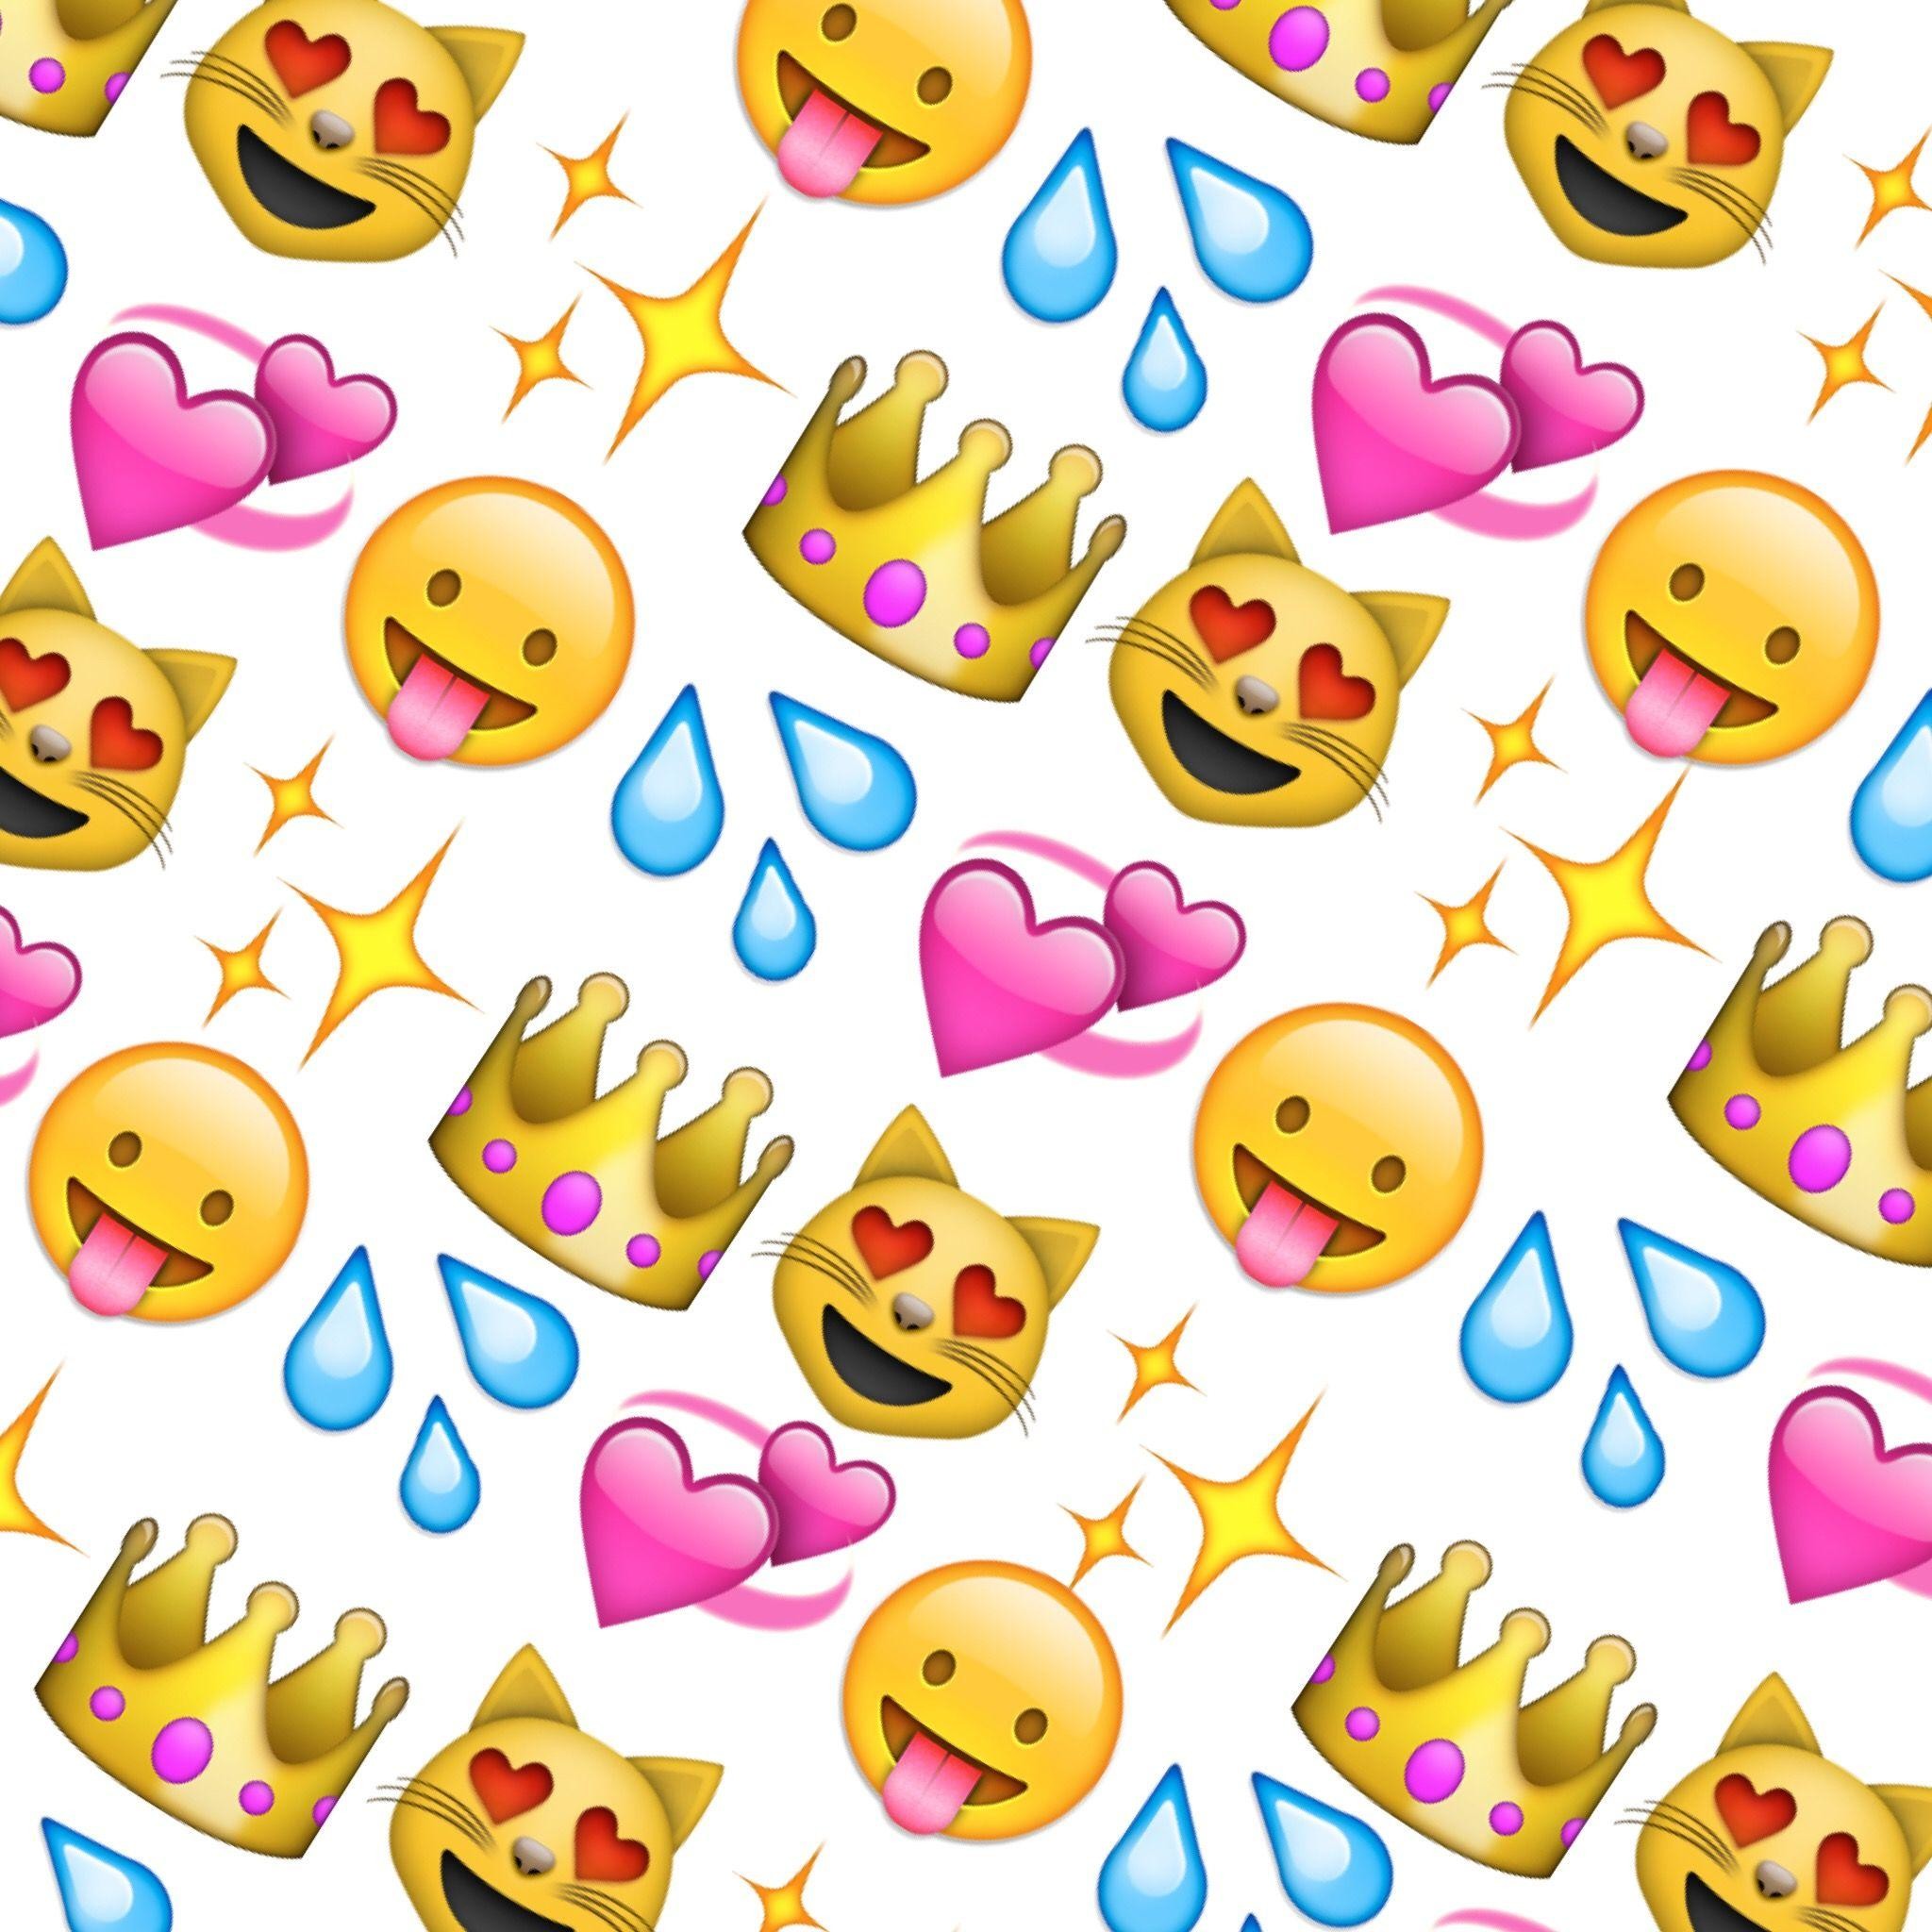 2048x2048 Queen emoji | Emoji wallpapers | Pinterest | Wallpapers and Queen